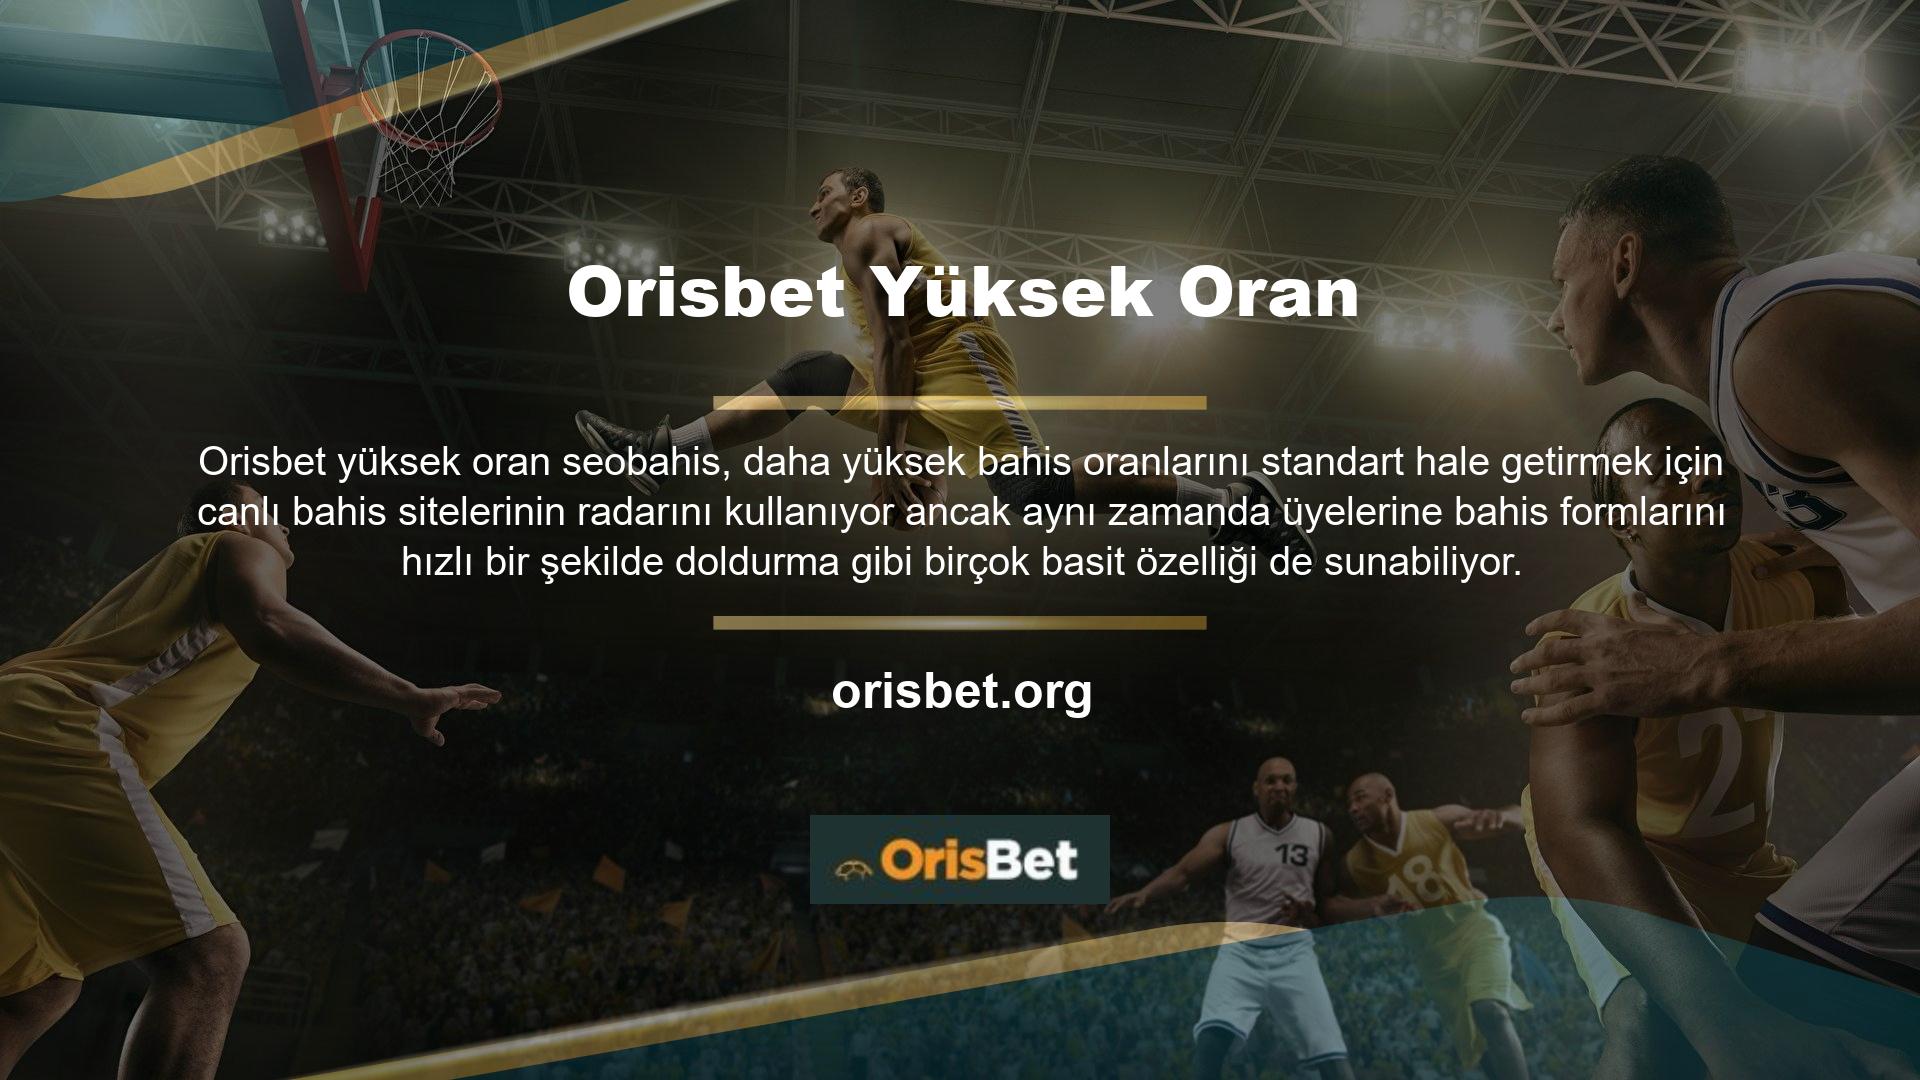 Ayrıca üyeler Orisbet TV'nin canlı maç yayını özelliğini şifresiz olarak ücretsiz olarak kullanabilmektedir